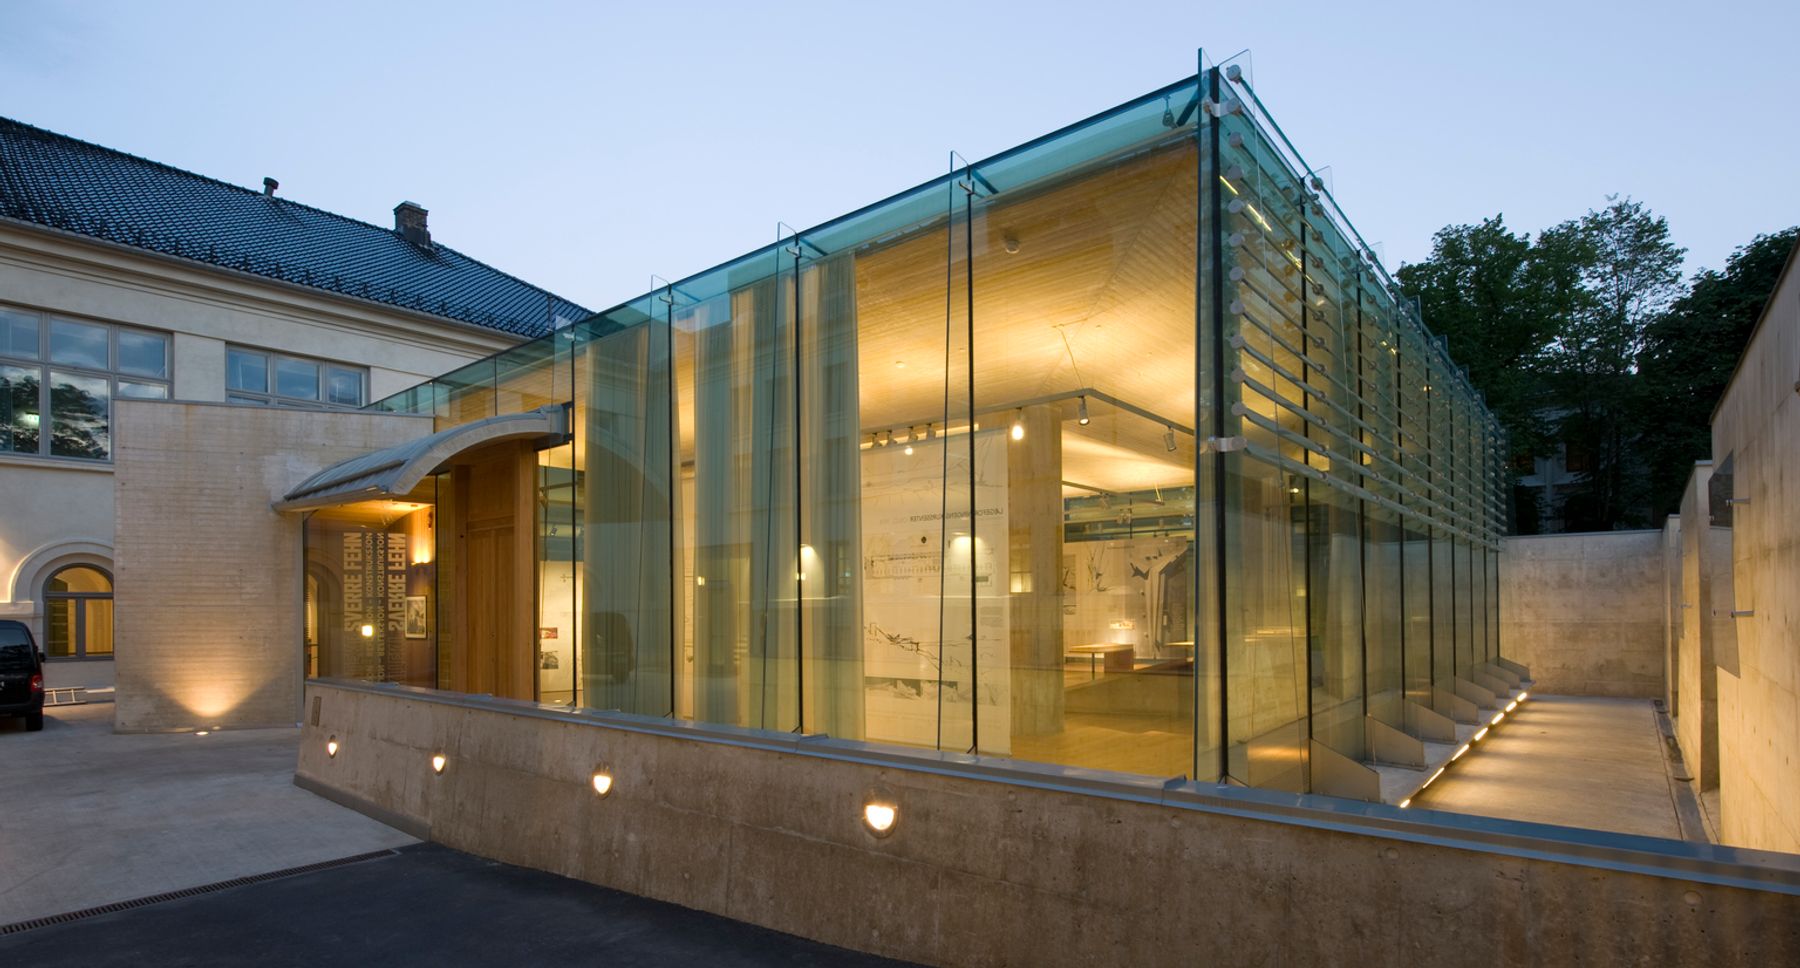 Nasjonalmuseet for kunst, arkitektur og design (Architekturmuseum), Oslo. Architekt: Prof. Arch. Sverre Fehn, Oslo.